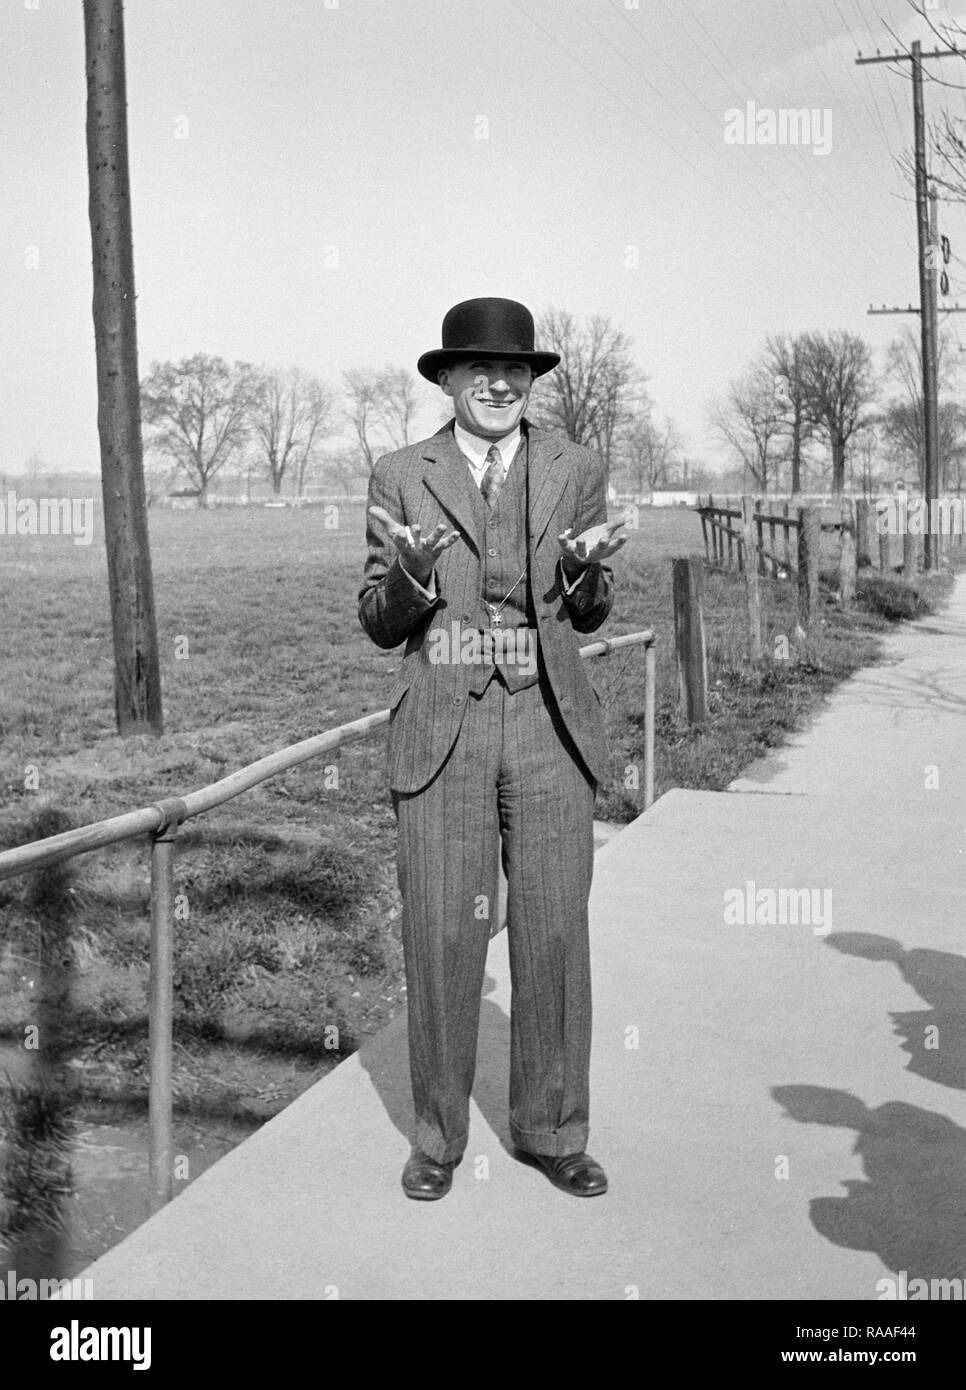 Un homme avec un chapeau melon, heureusement des gestes ca. L'année 1930. Banque D'Images